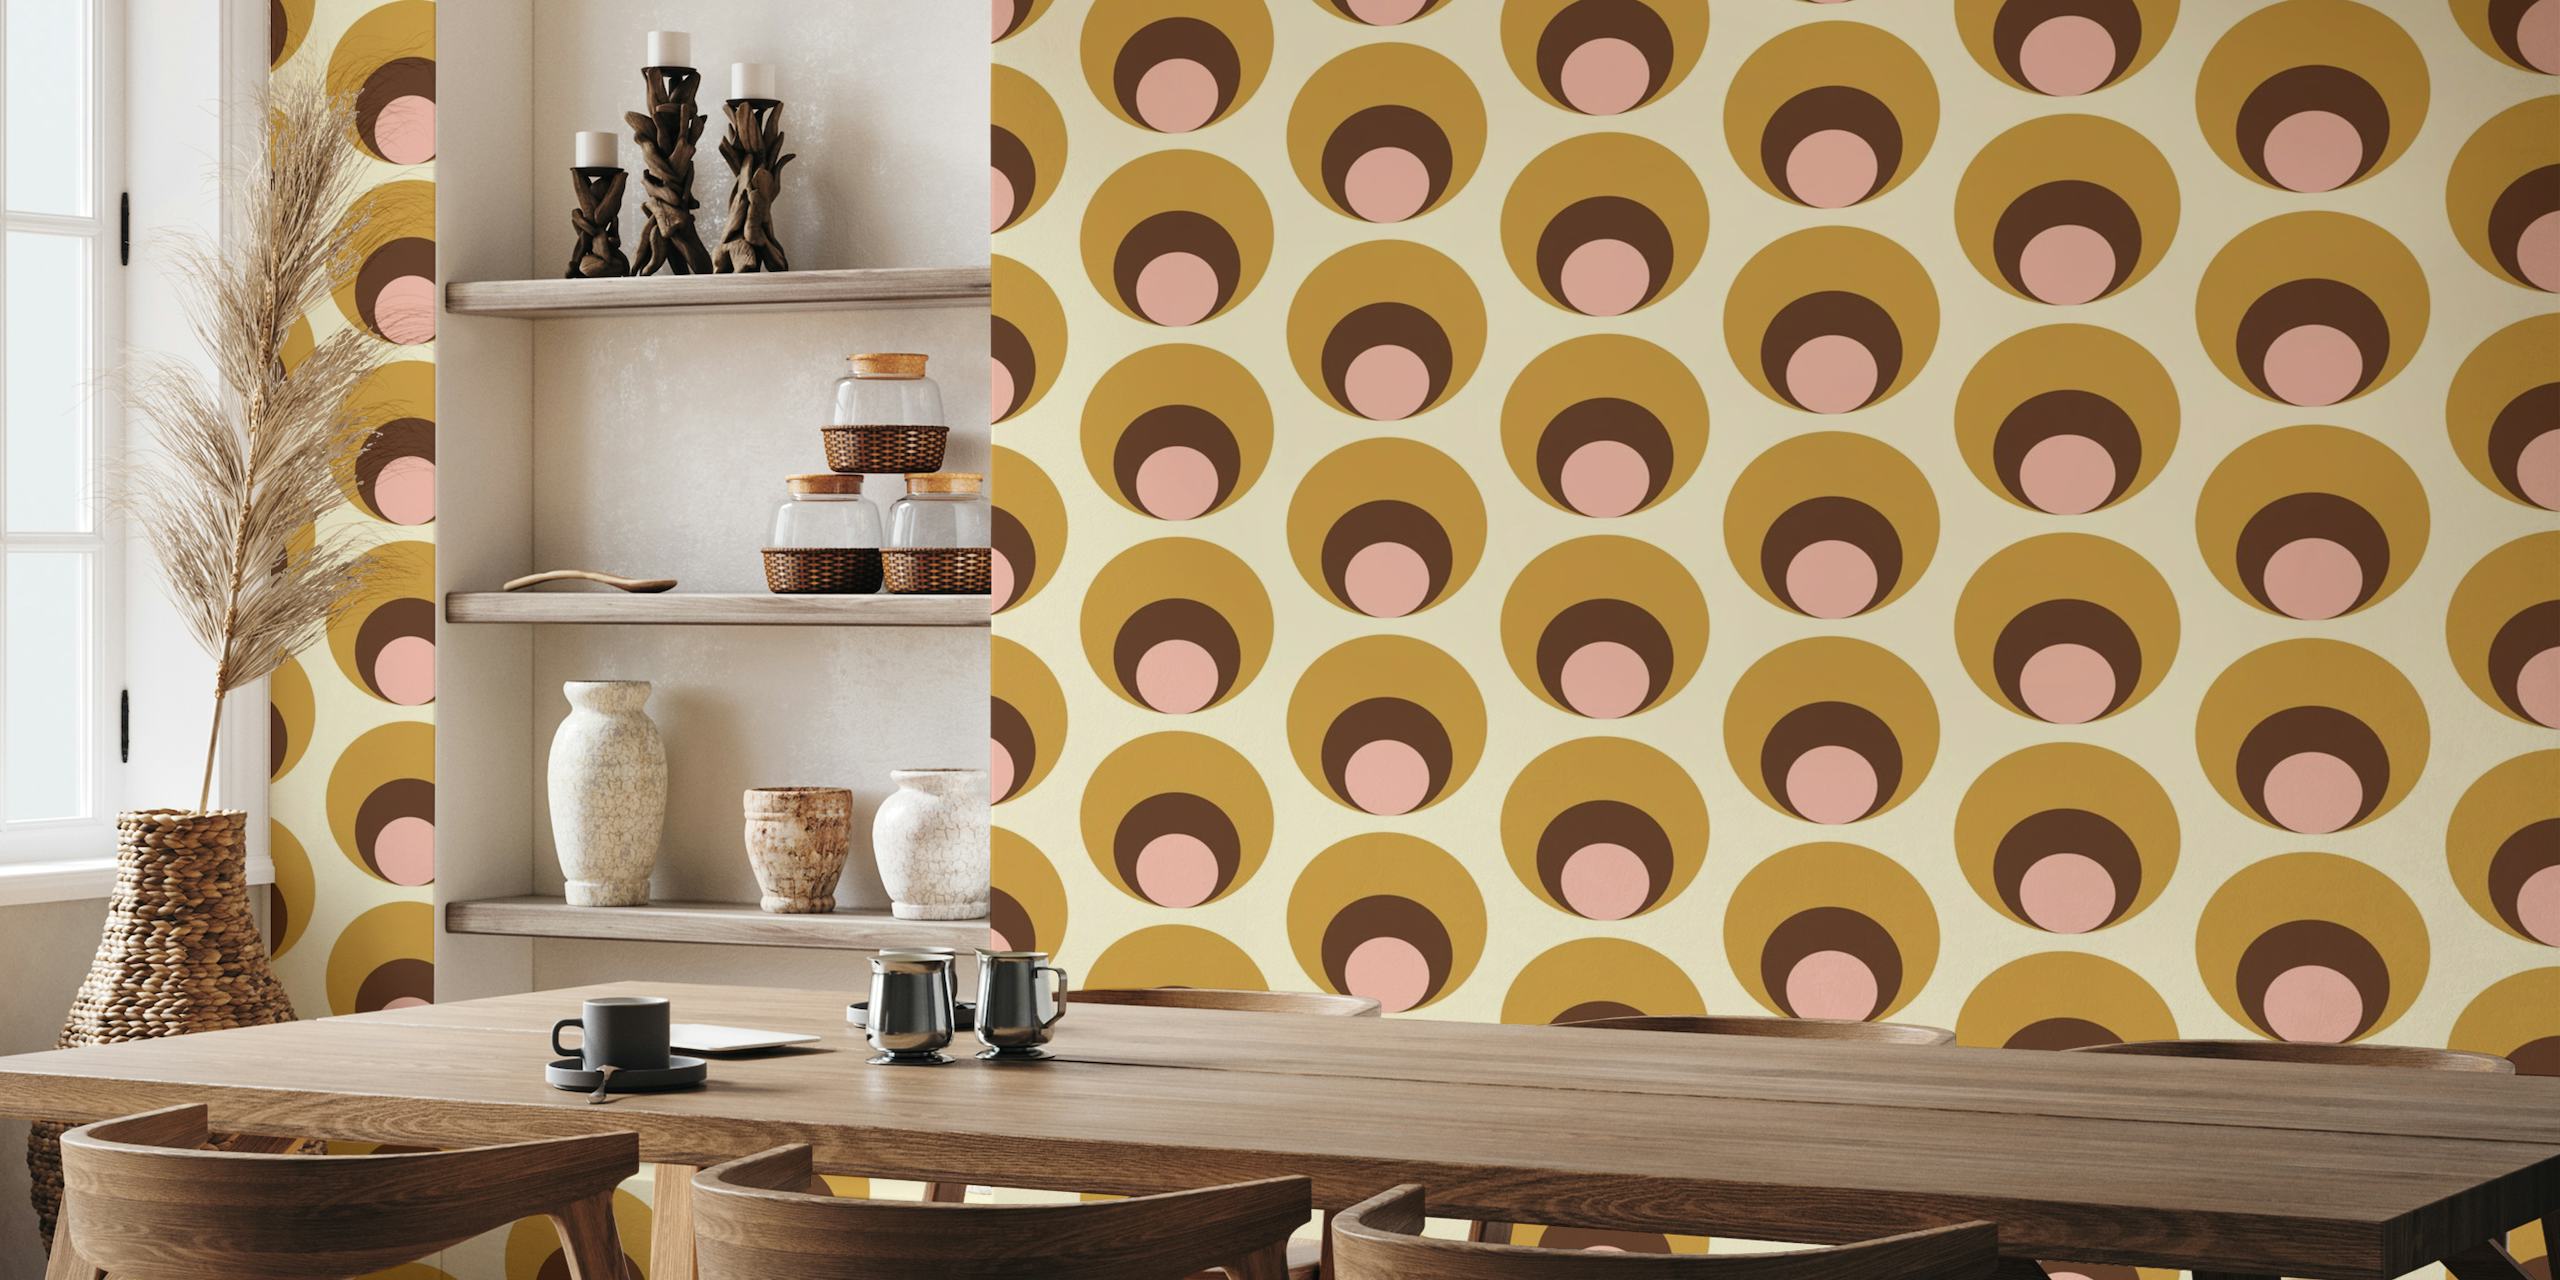 Apricity Retro Dots beige seinätapetti, jossa on päällekkäisiä ympyröitä beigen, ruskean ja poskipunan sävyissä.